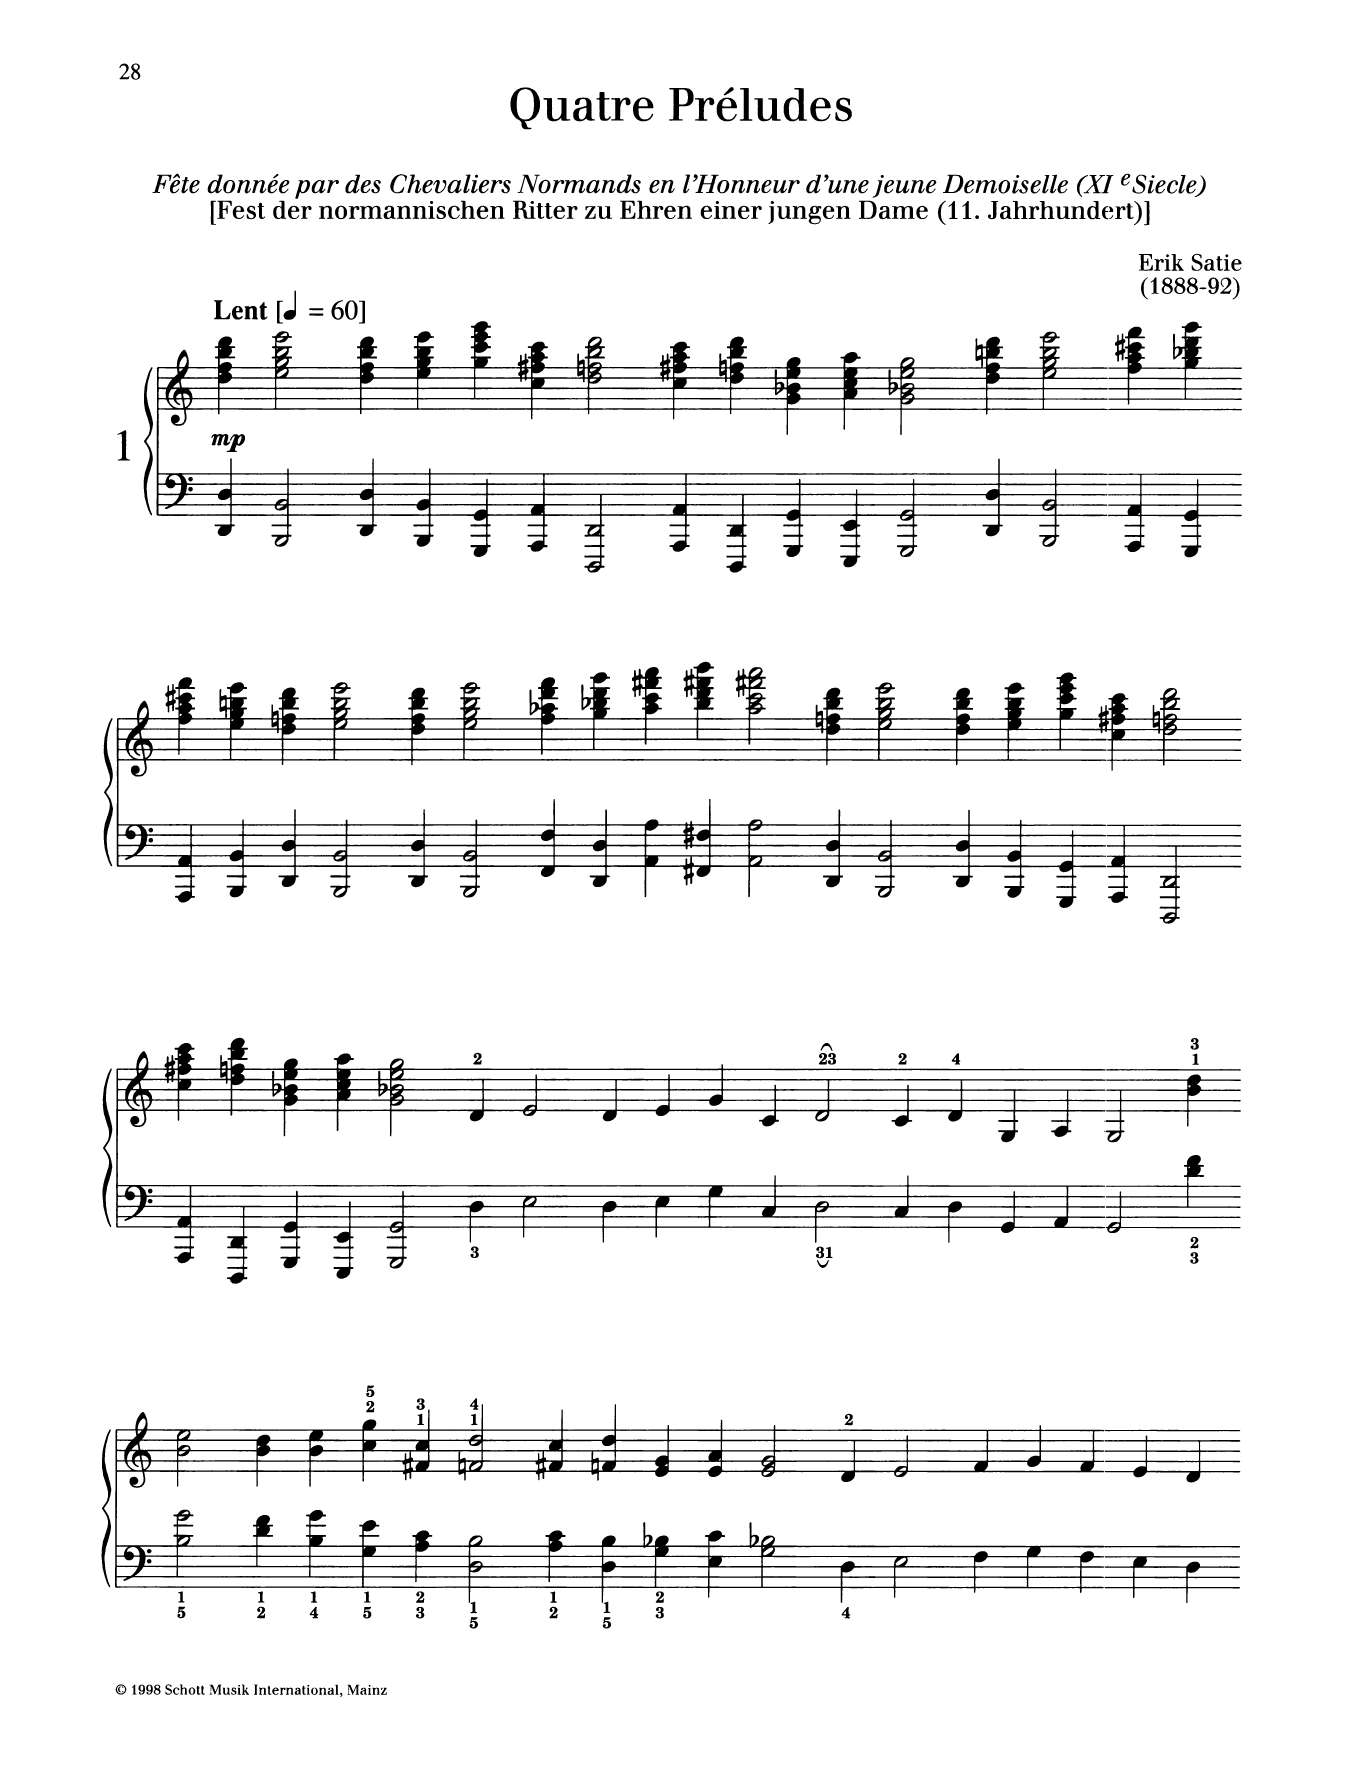 Erik Satie Fete donnee par des Chevaliers Normands en l'Honneur d'une jeune Demoiselle sheet music notes and chords arranged for Piano Solo